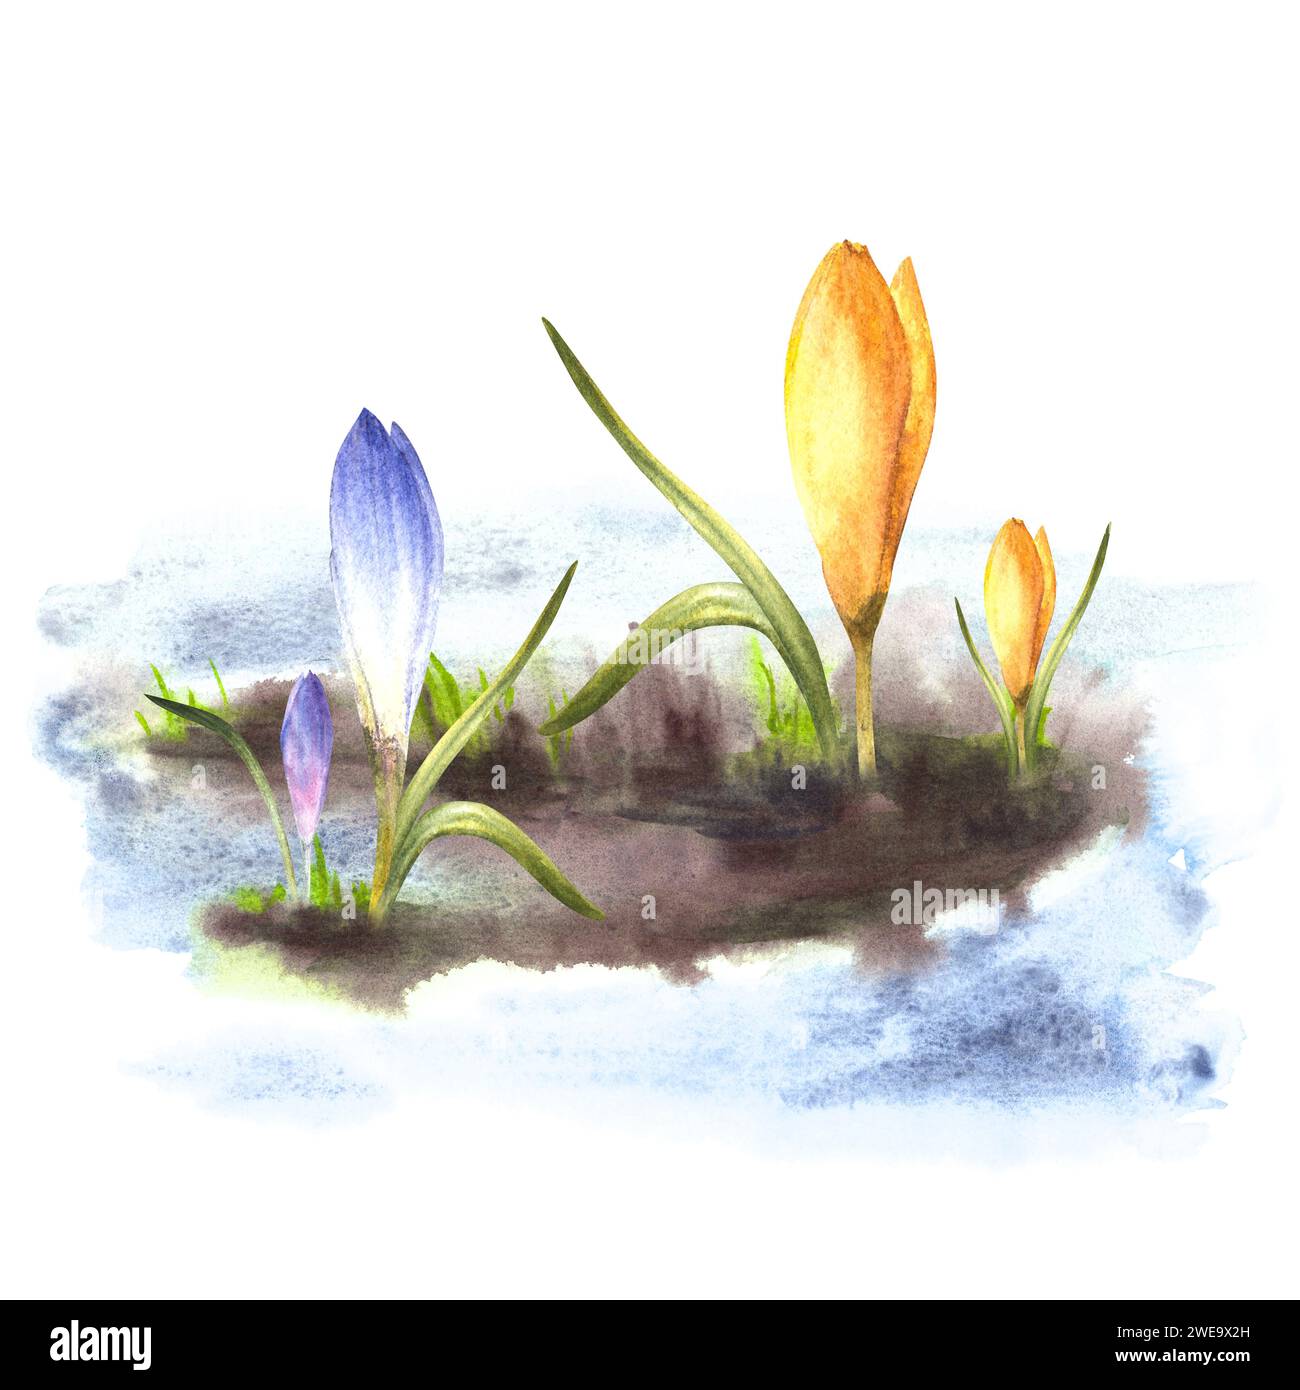 Aquarell gemalte Clipart-Illustration Ankunft des Frühlings, das Erwachen der Natur nach dem Winter schmelzenden Schnee, gelb lila blaue Krokusse Blumen Stockfoto